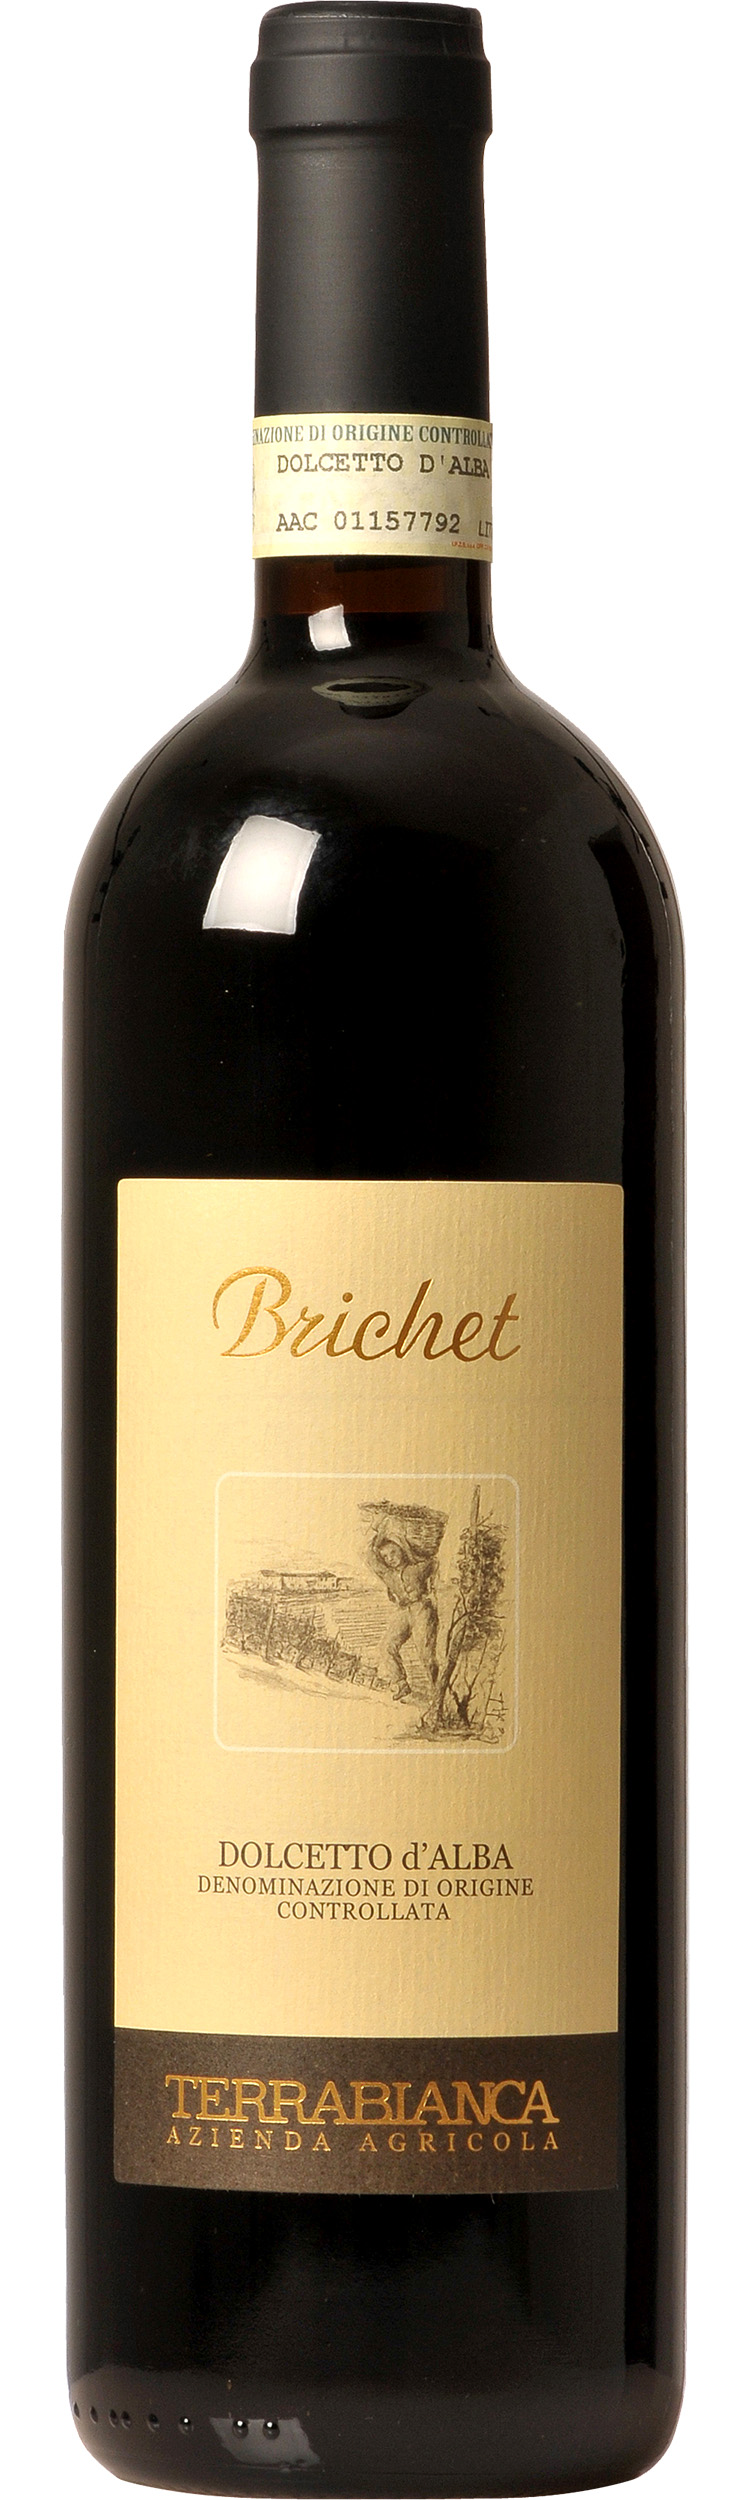 Brichet - Dolcetto d'Alba D.O.C.